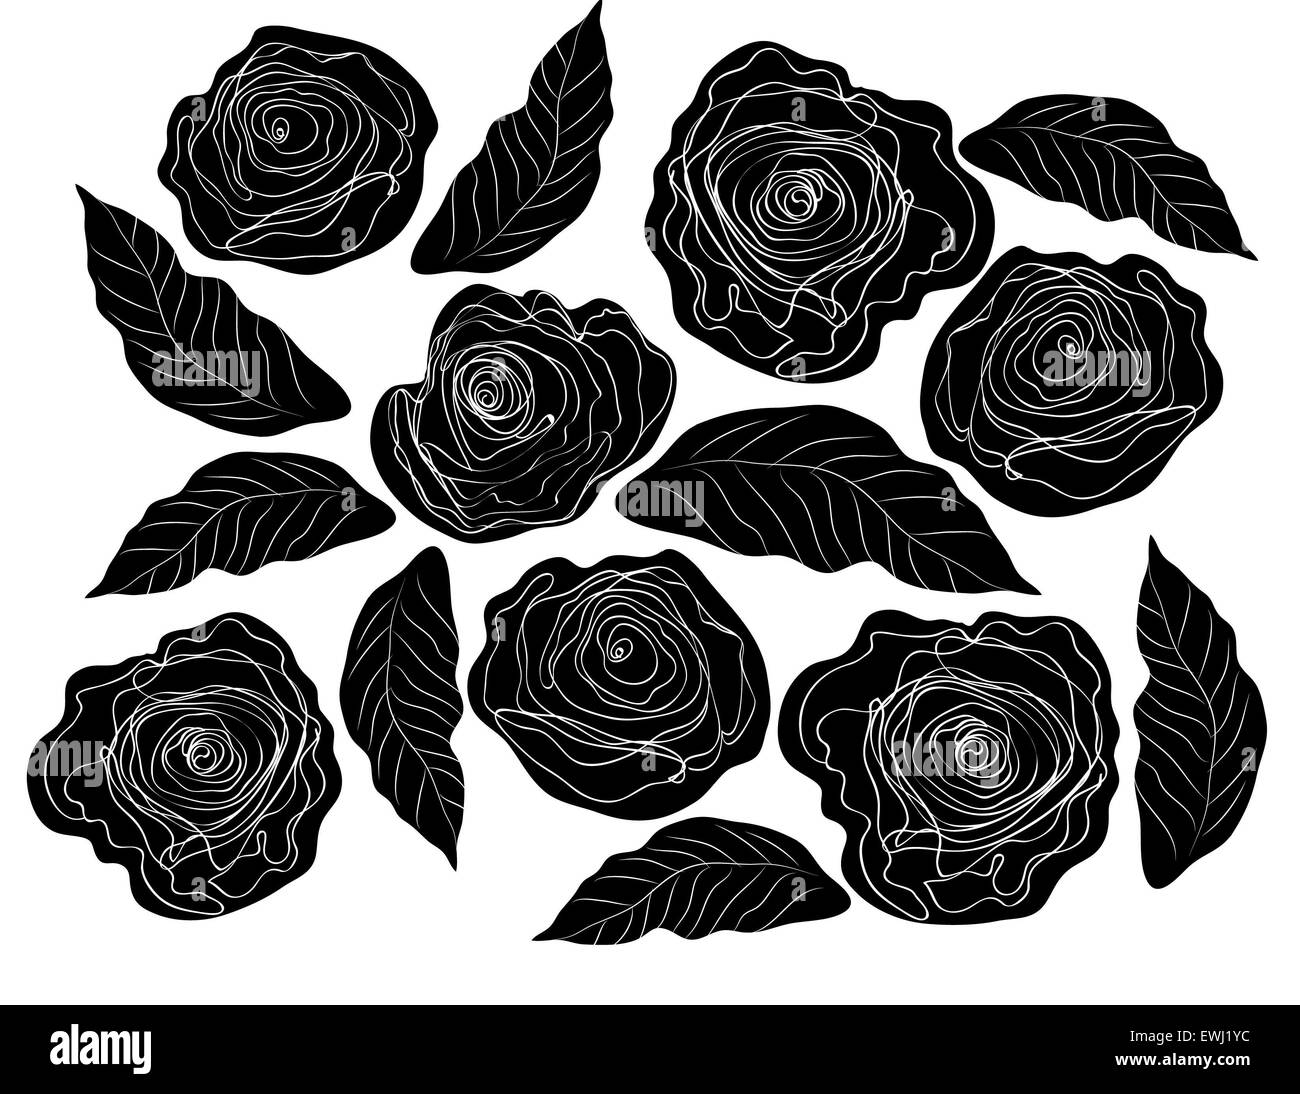 Classico e originale composizione floreale in bianco e nero di rose per celebrare l'amore Foto Stock